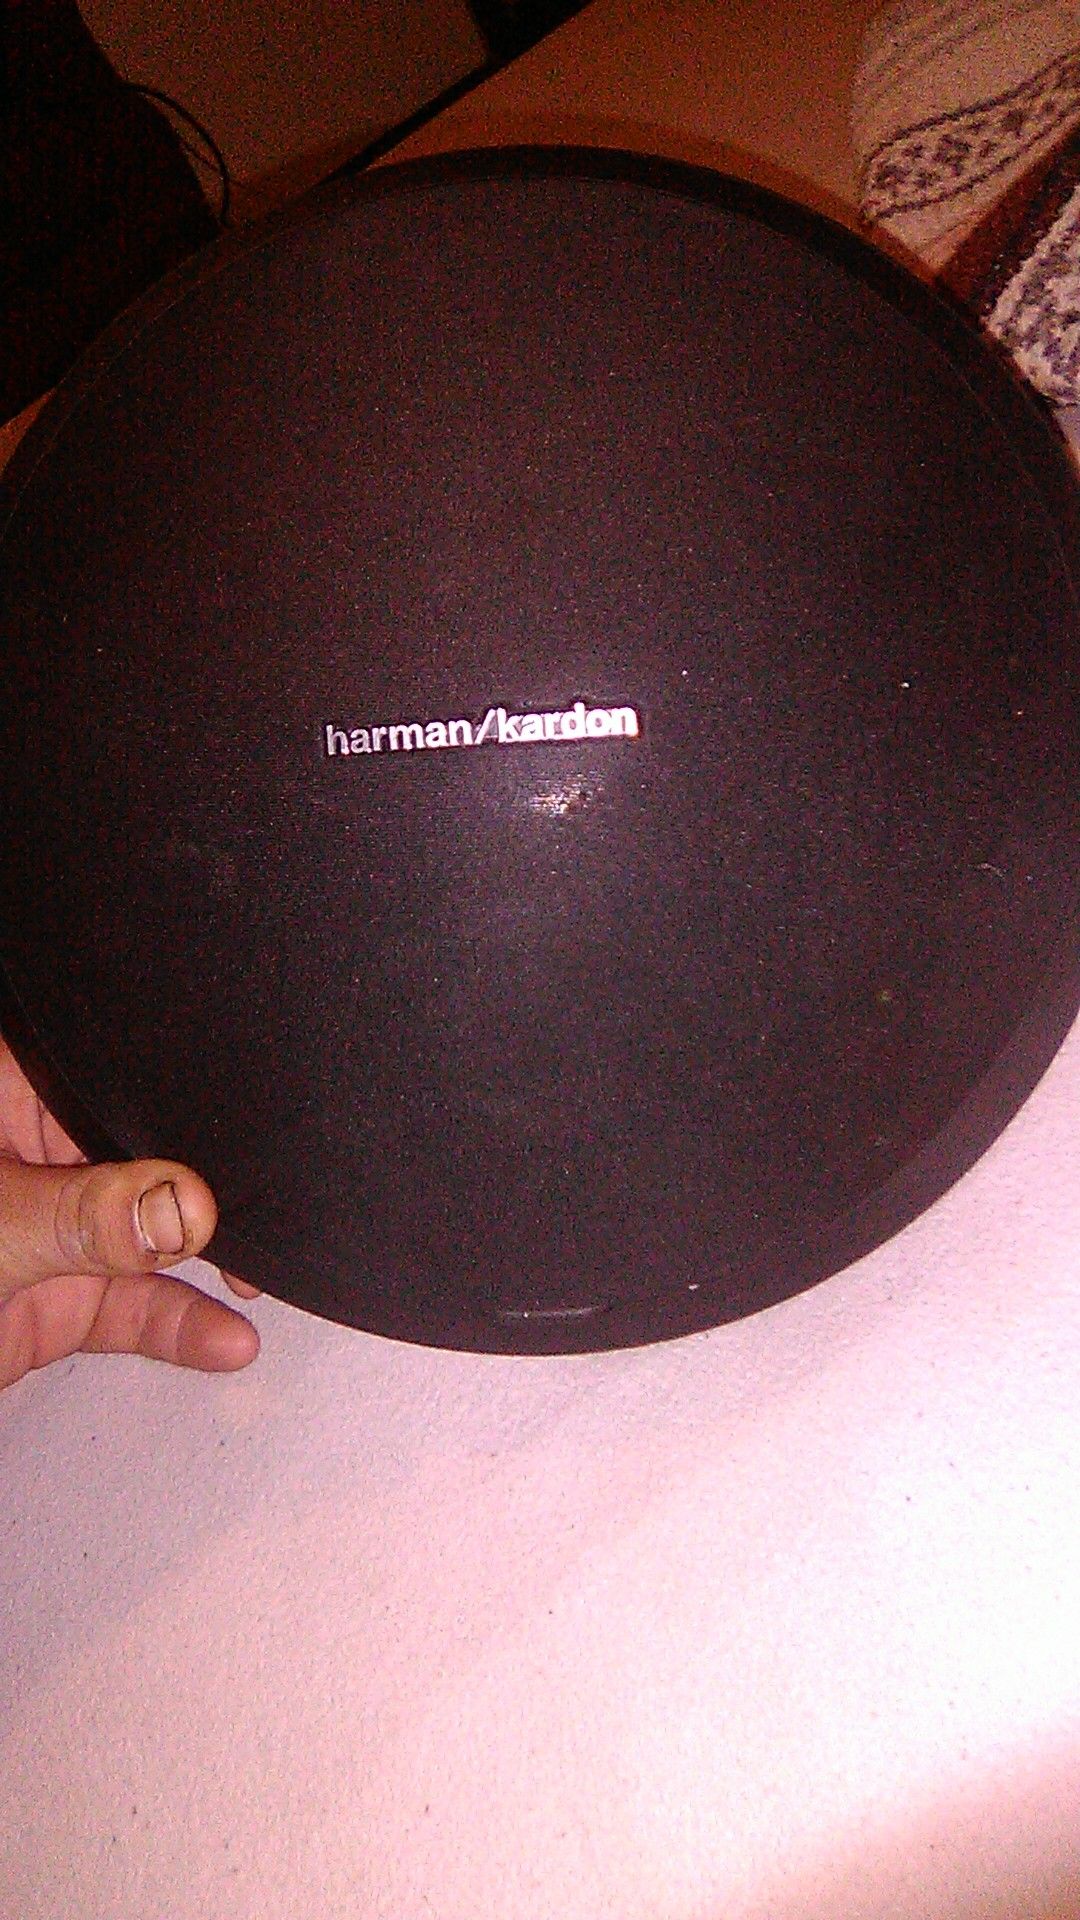 Harman/Kardon Bluetooth speaker